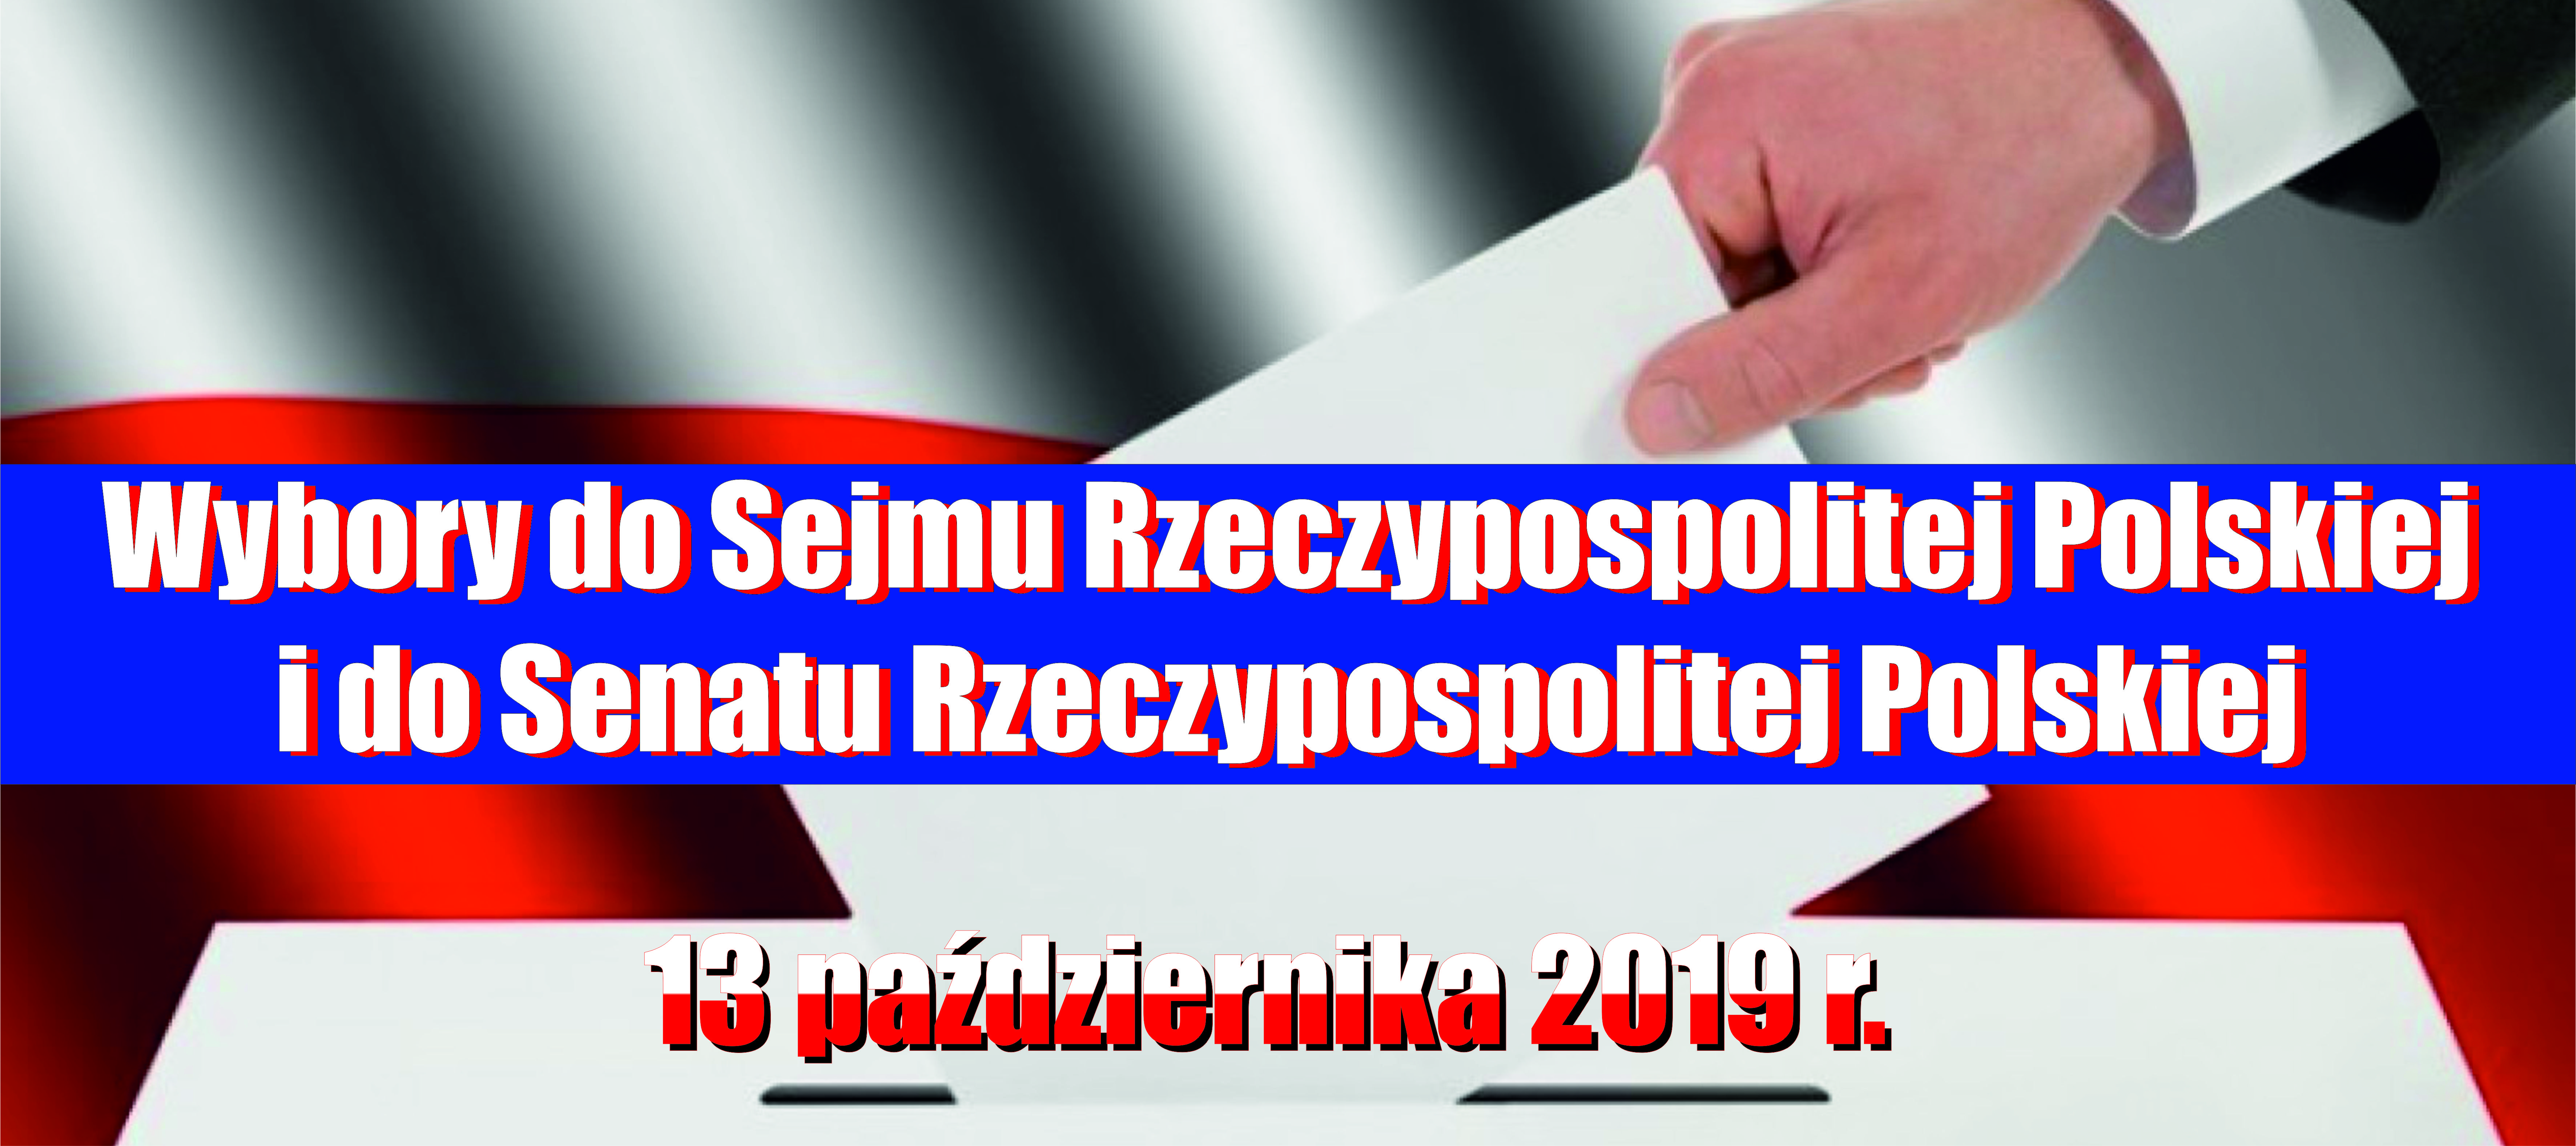 Baner Wybory do Sejmu Rzeczypospolitej Polskiej i do Senatu Rzeczypospolitej Polskiej - 13 października 2019 r.